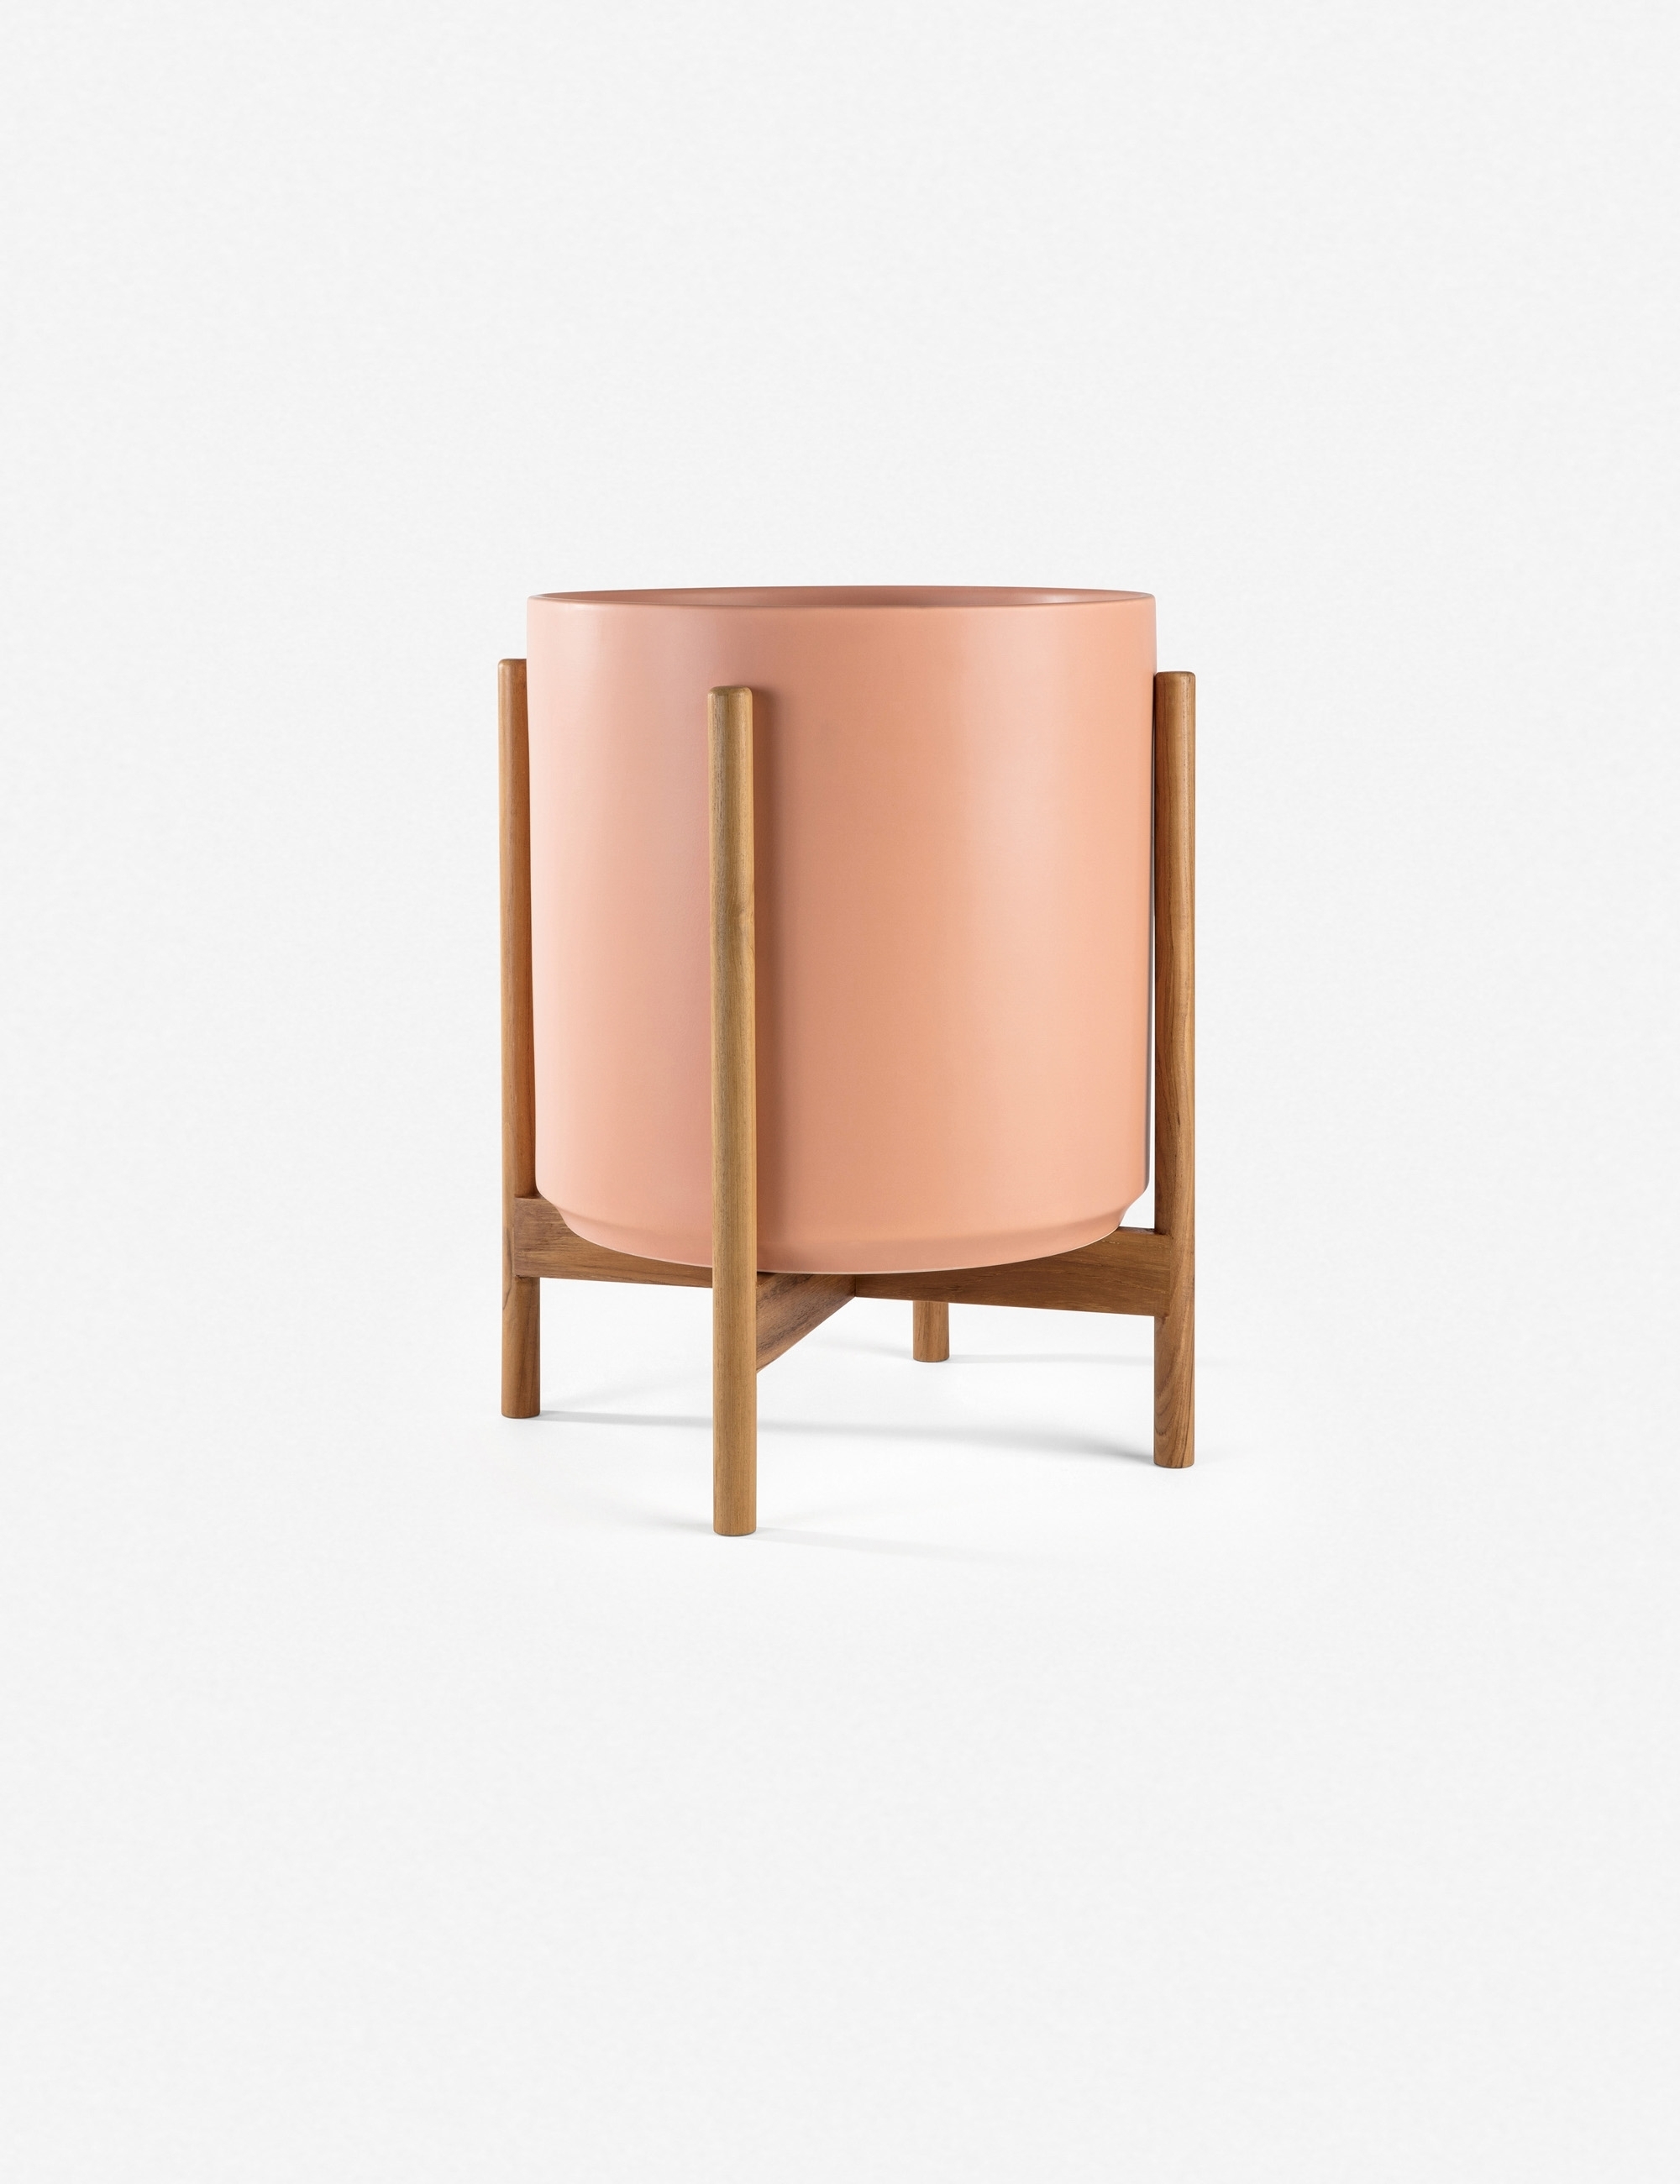 LBE Design Ceramic Planter, Peach 10"Dia x 9"H - with stand - Image 8